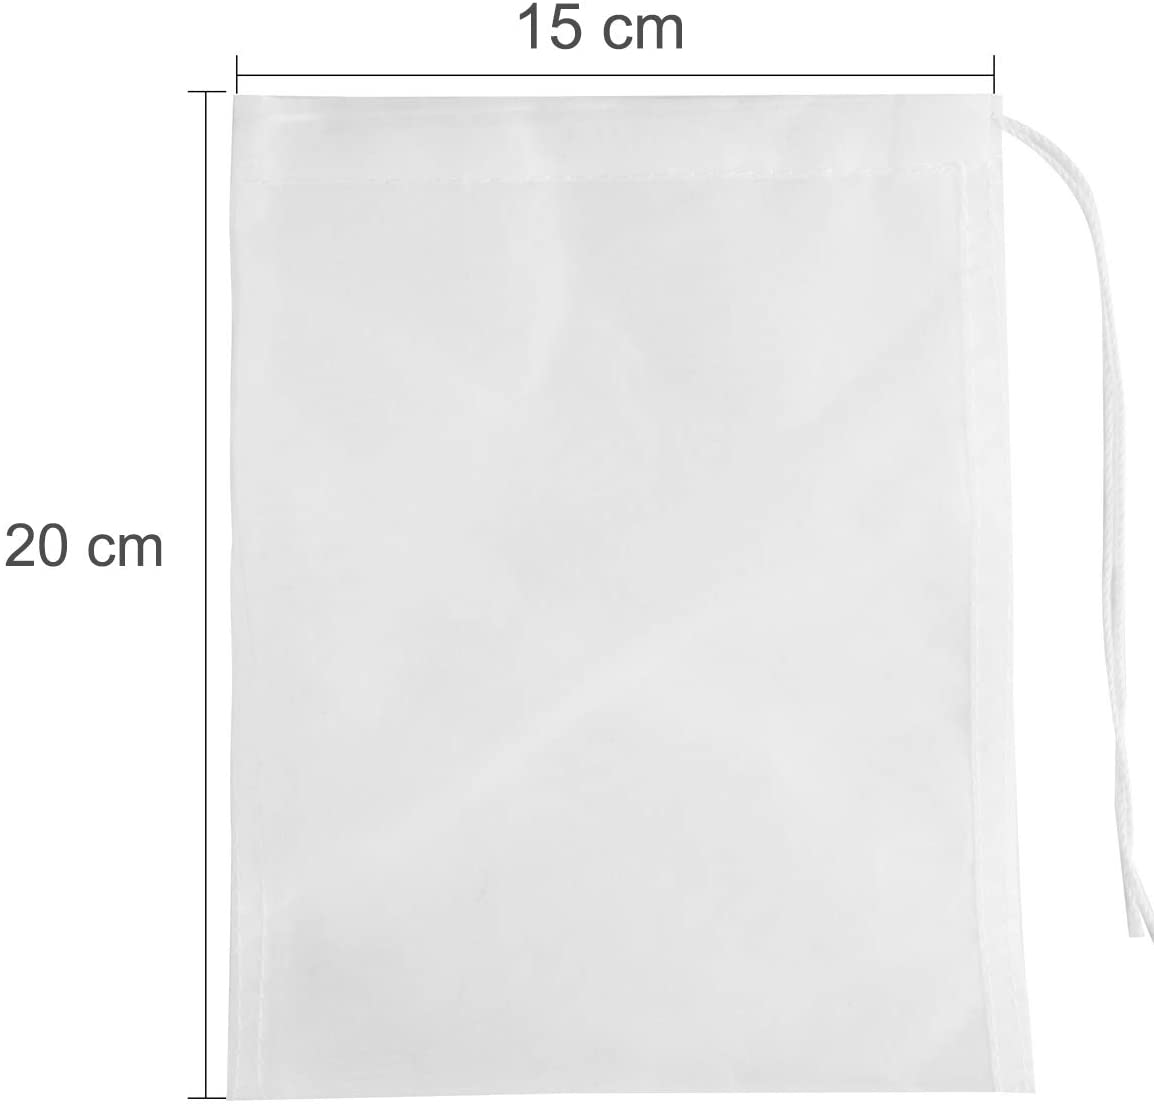  SLSON - Bolsas de Filtro para Acuario (5 Unidades, 180 micrones, Reutilizables, Nailon), Color Blanco 